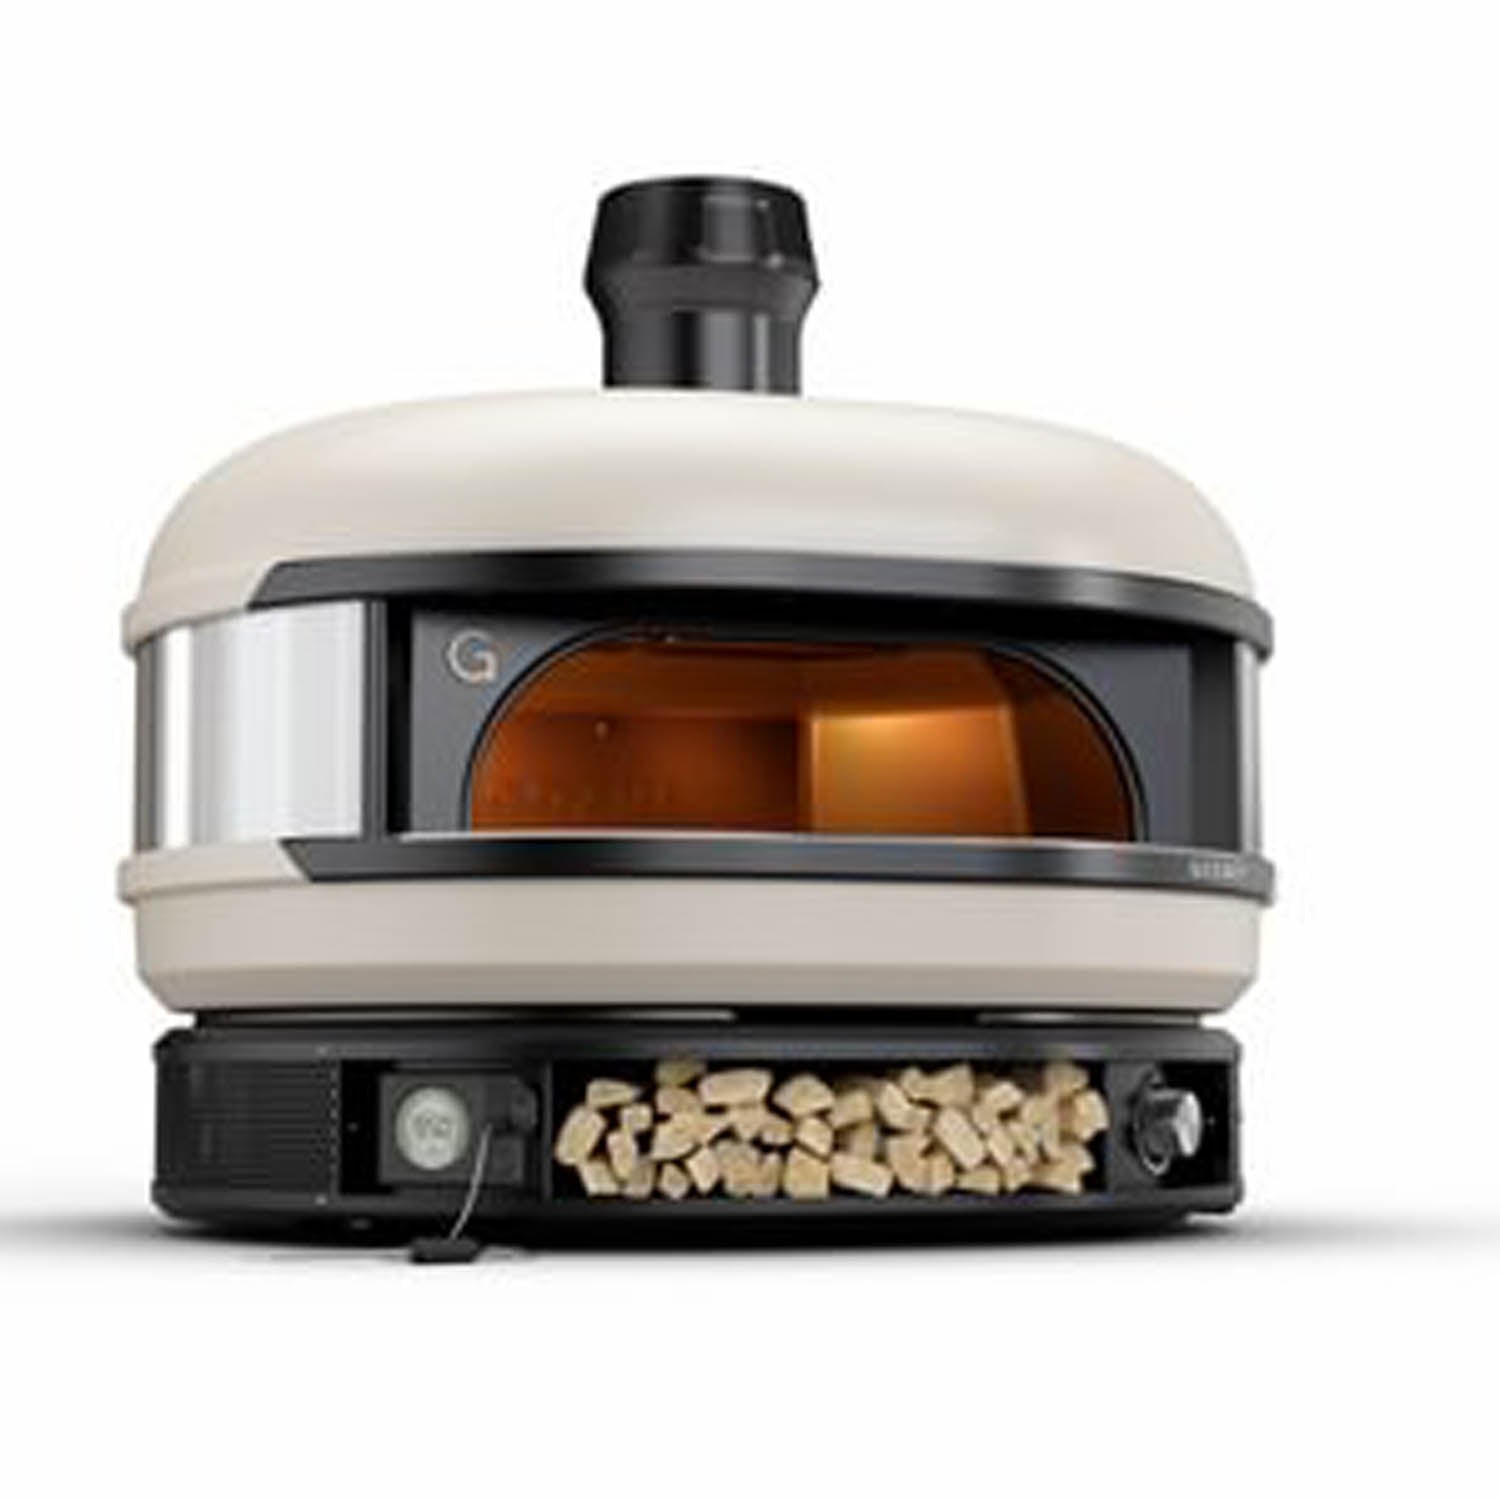 Gozney Dome Dual Fuel Pizza Oven LPG Bone-Colored Domed Countertop Pizza Oven